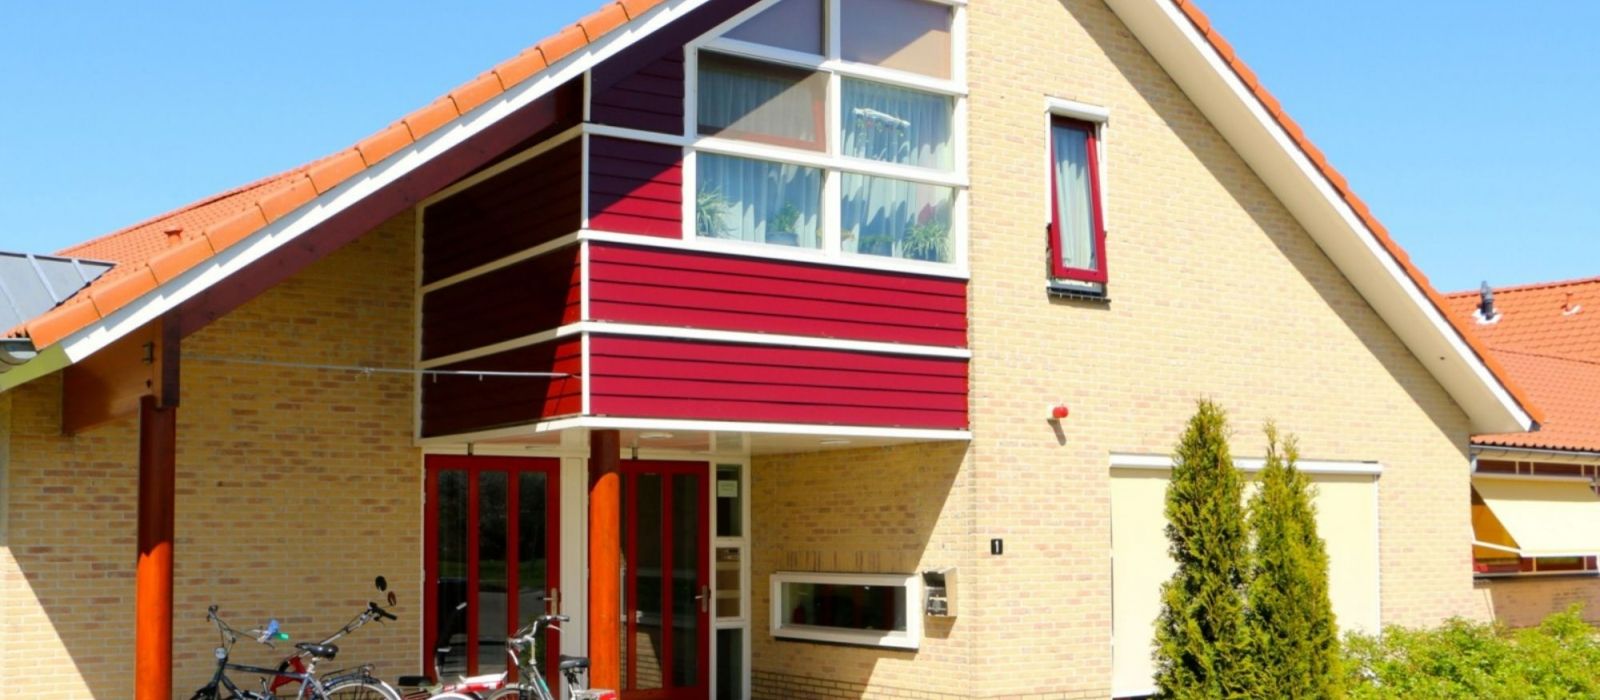 Woning woonlocatie Oude Rijnlaan 1-3 in Zwammerdam